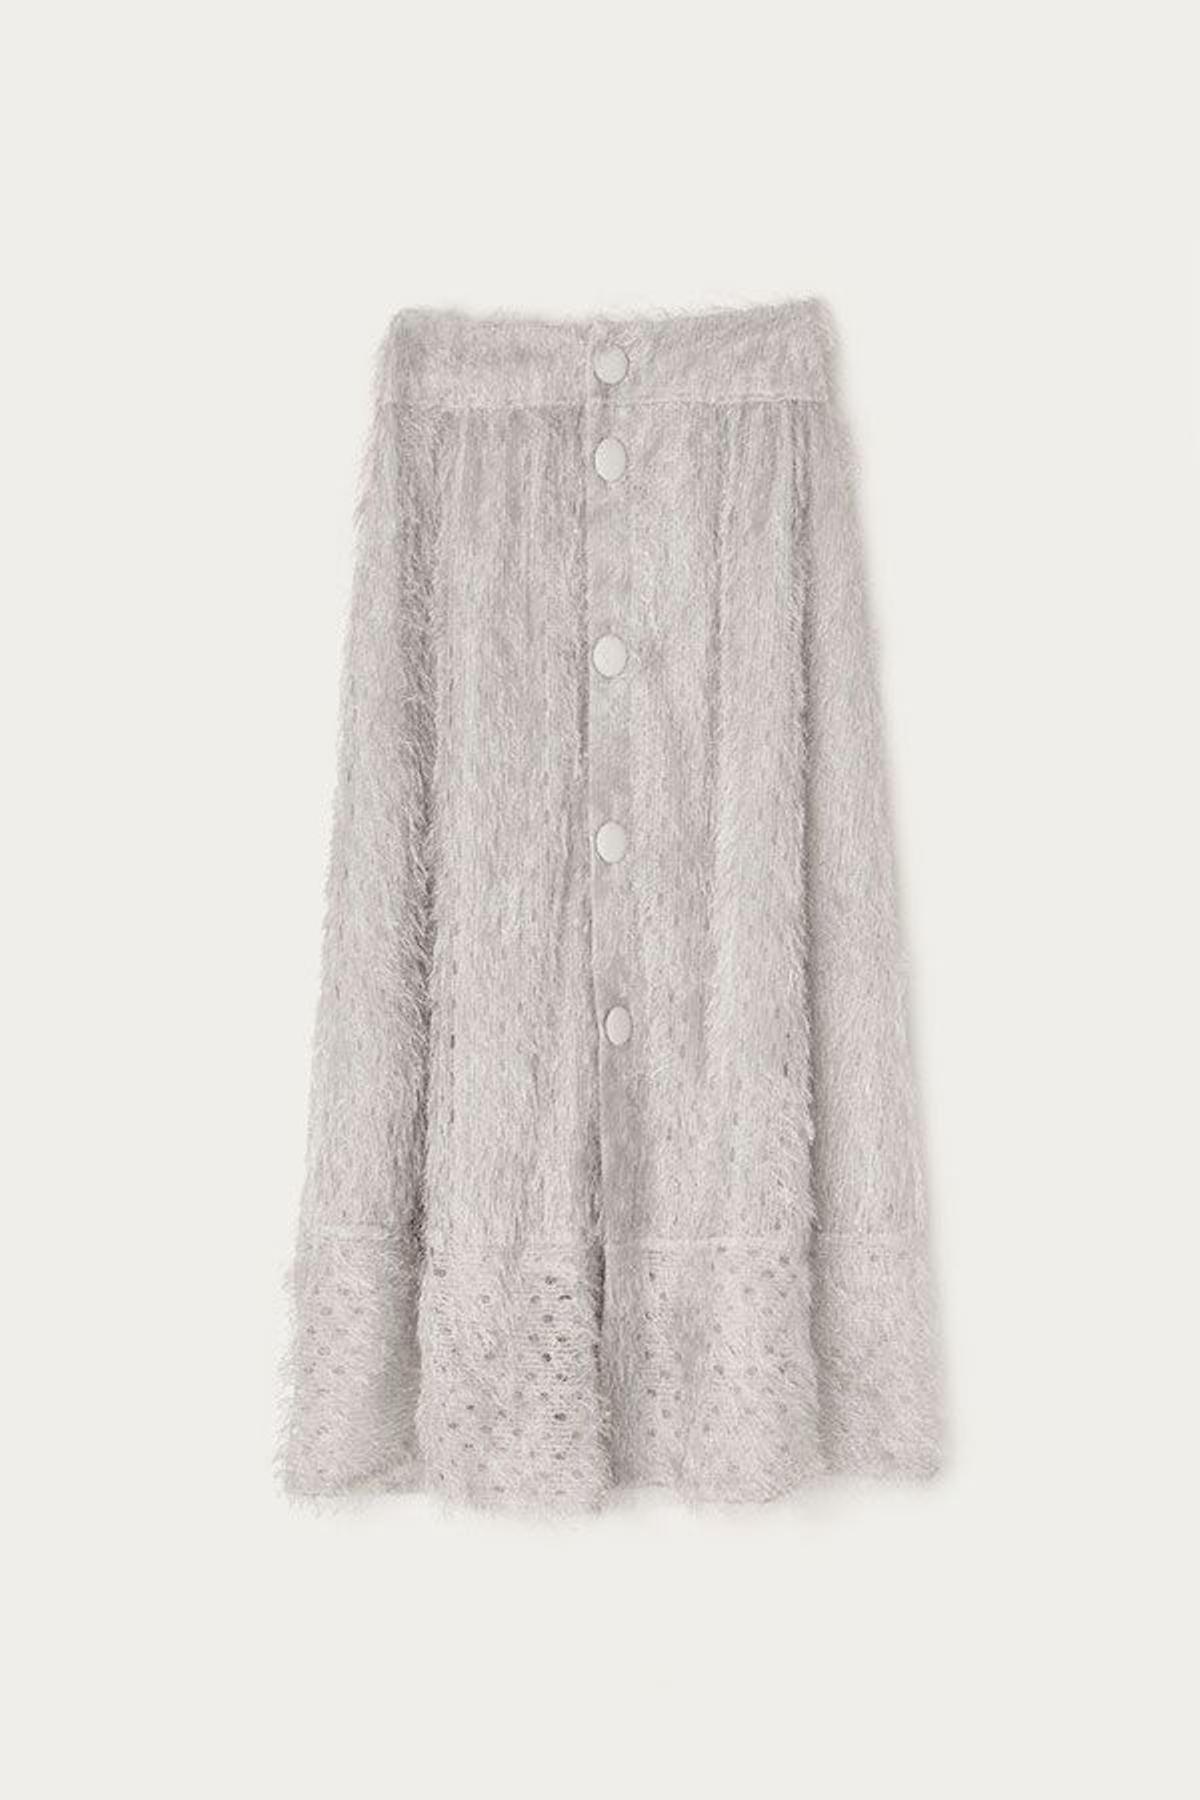 Wish List Agosto 2017: La falda peso pluma de Uterqüe